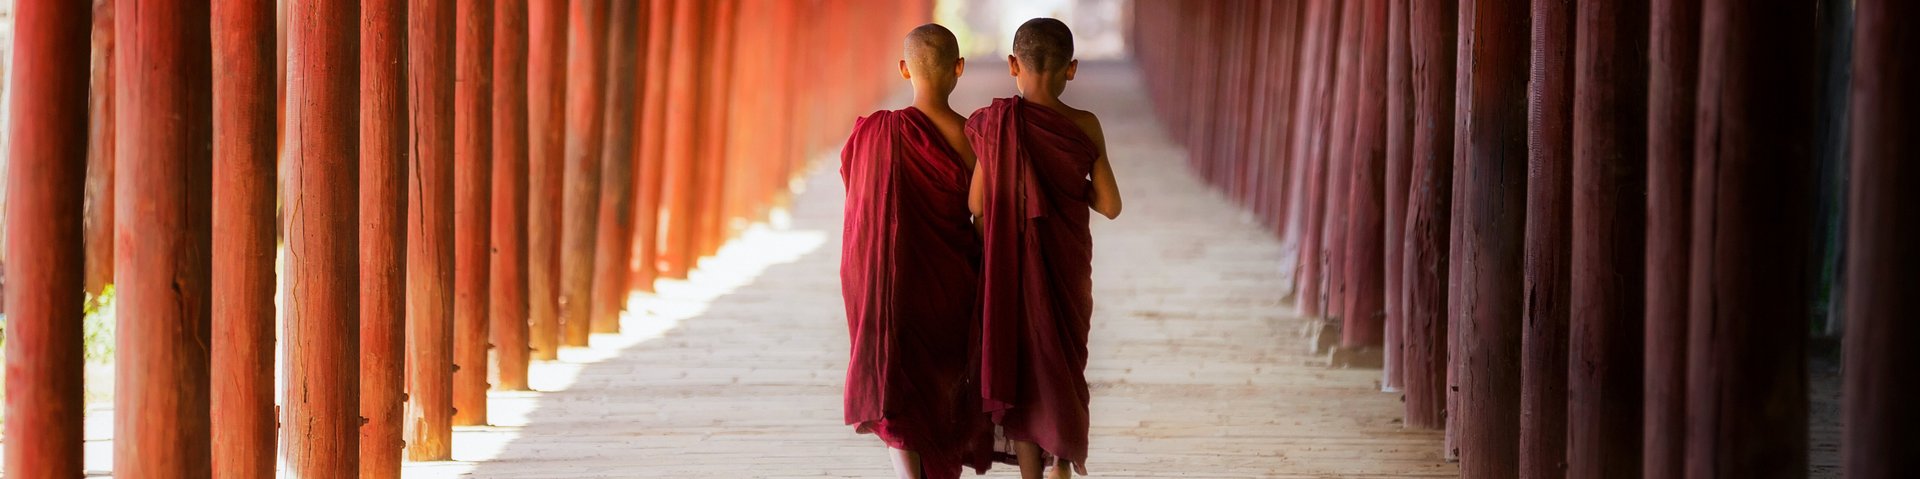 Zwei junge buddhistische Mönche in Myanmar